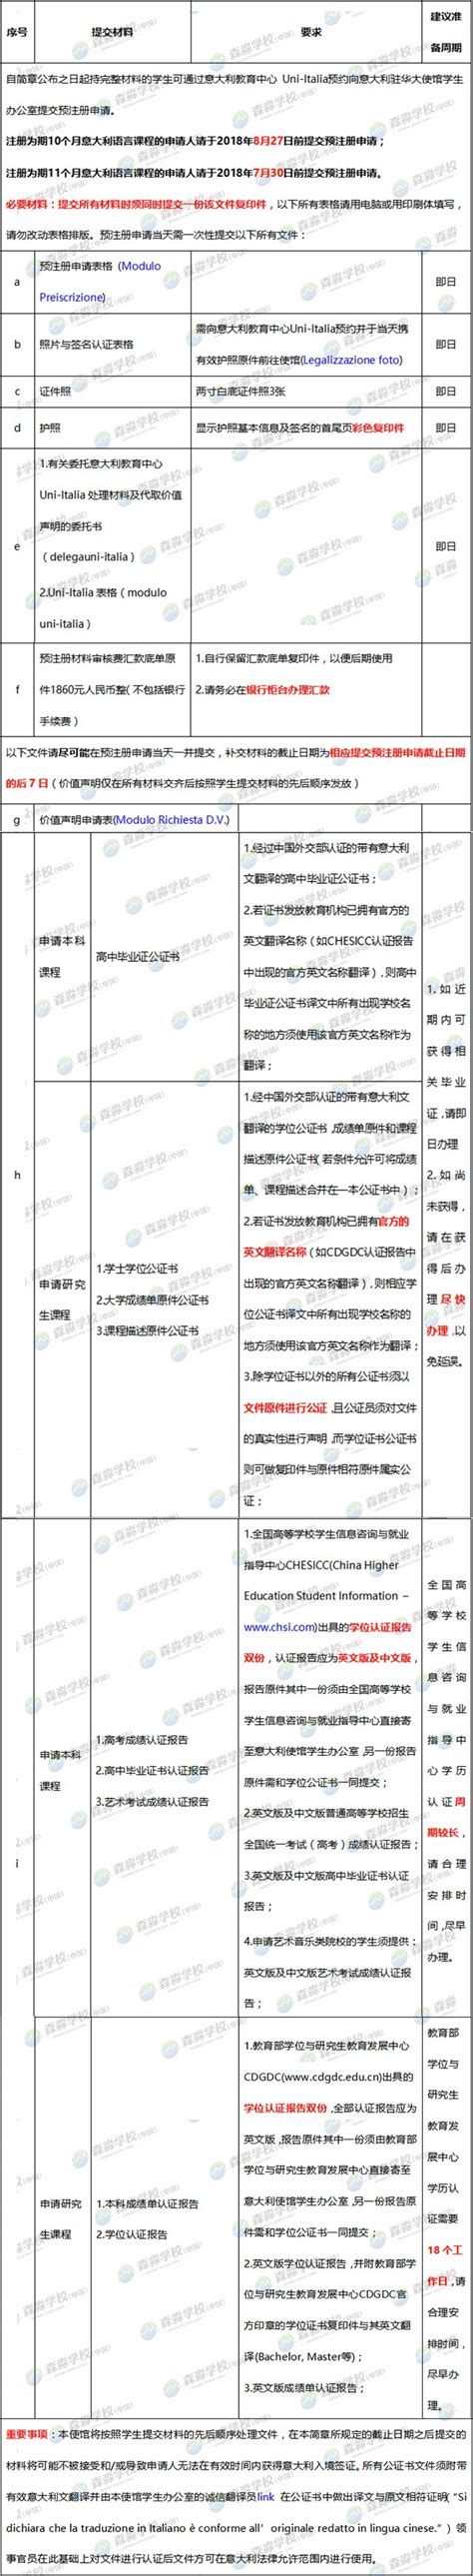 森淼学校(中国)- 2018/2019学年意大利国际生上海领区预注册指南发布